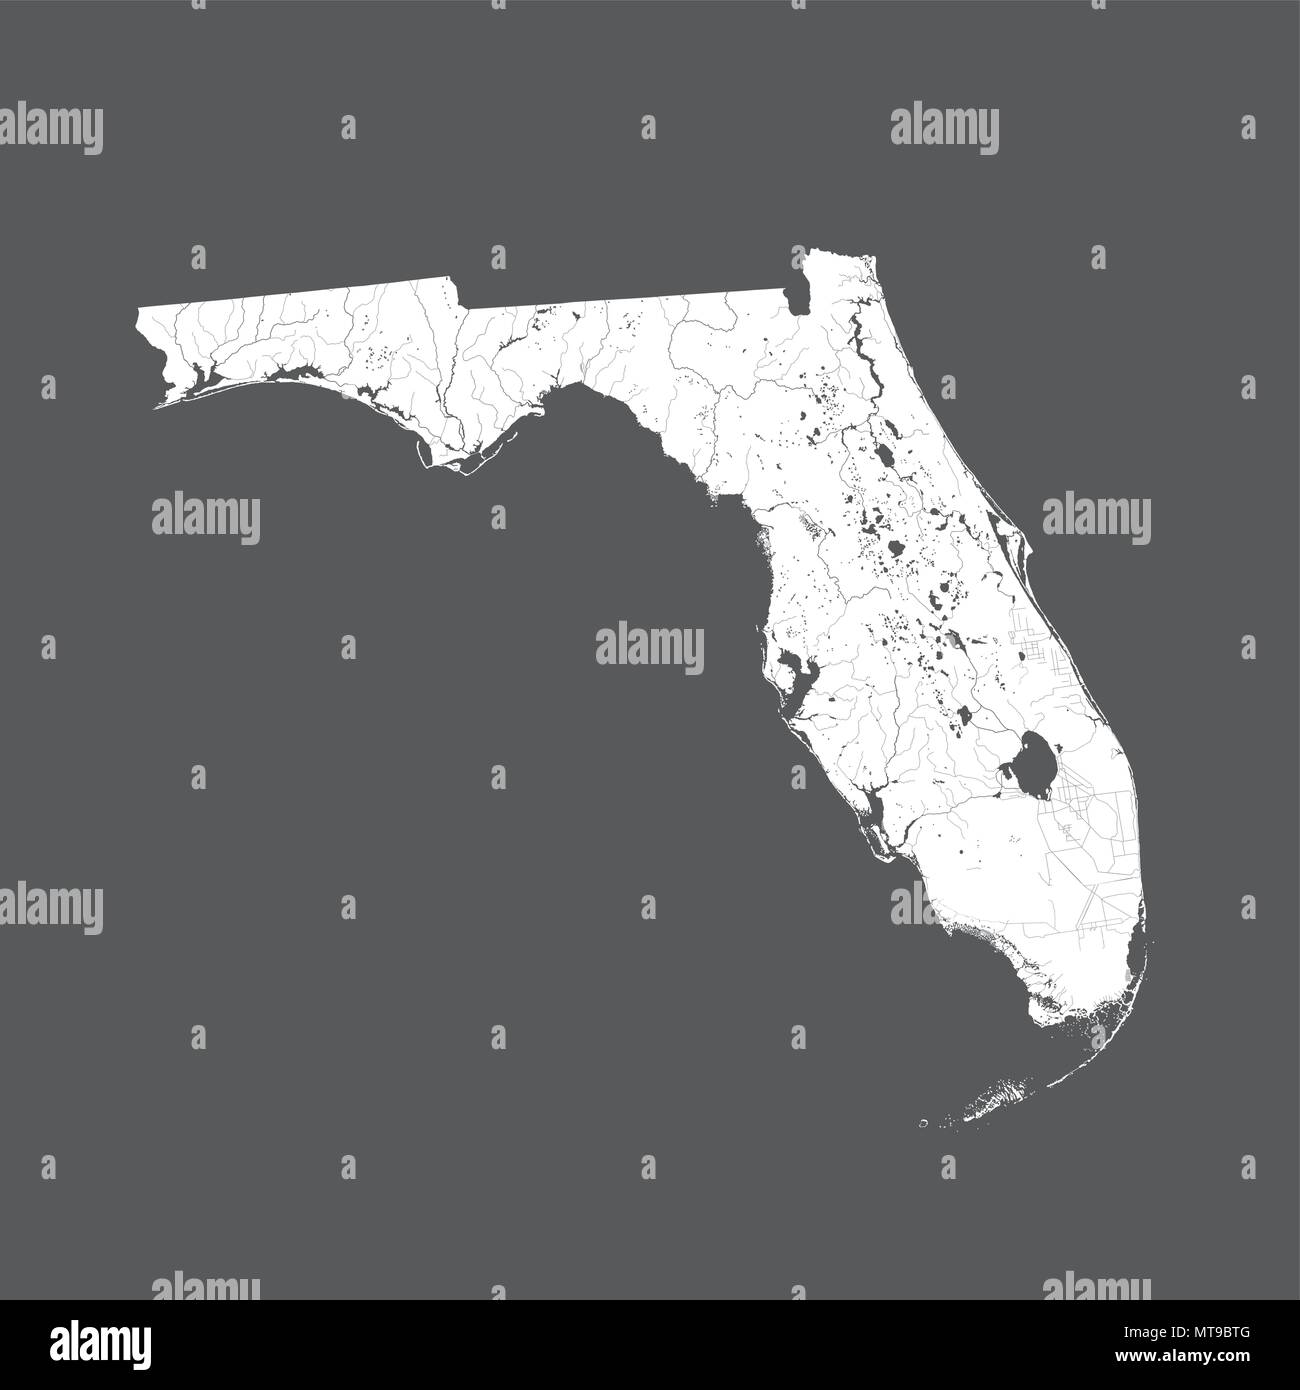 Stati Uniti - mappa della Florida. Fatto a mano. I fiumi e i laghi sono mostrati. Si prega di guardare le mie altre immagini della serie cartografica - sono tutti molto detaile Illustrazione Vettoriale